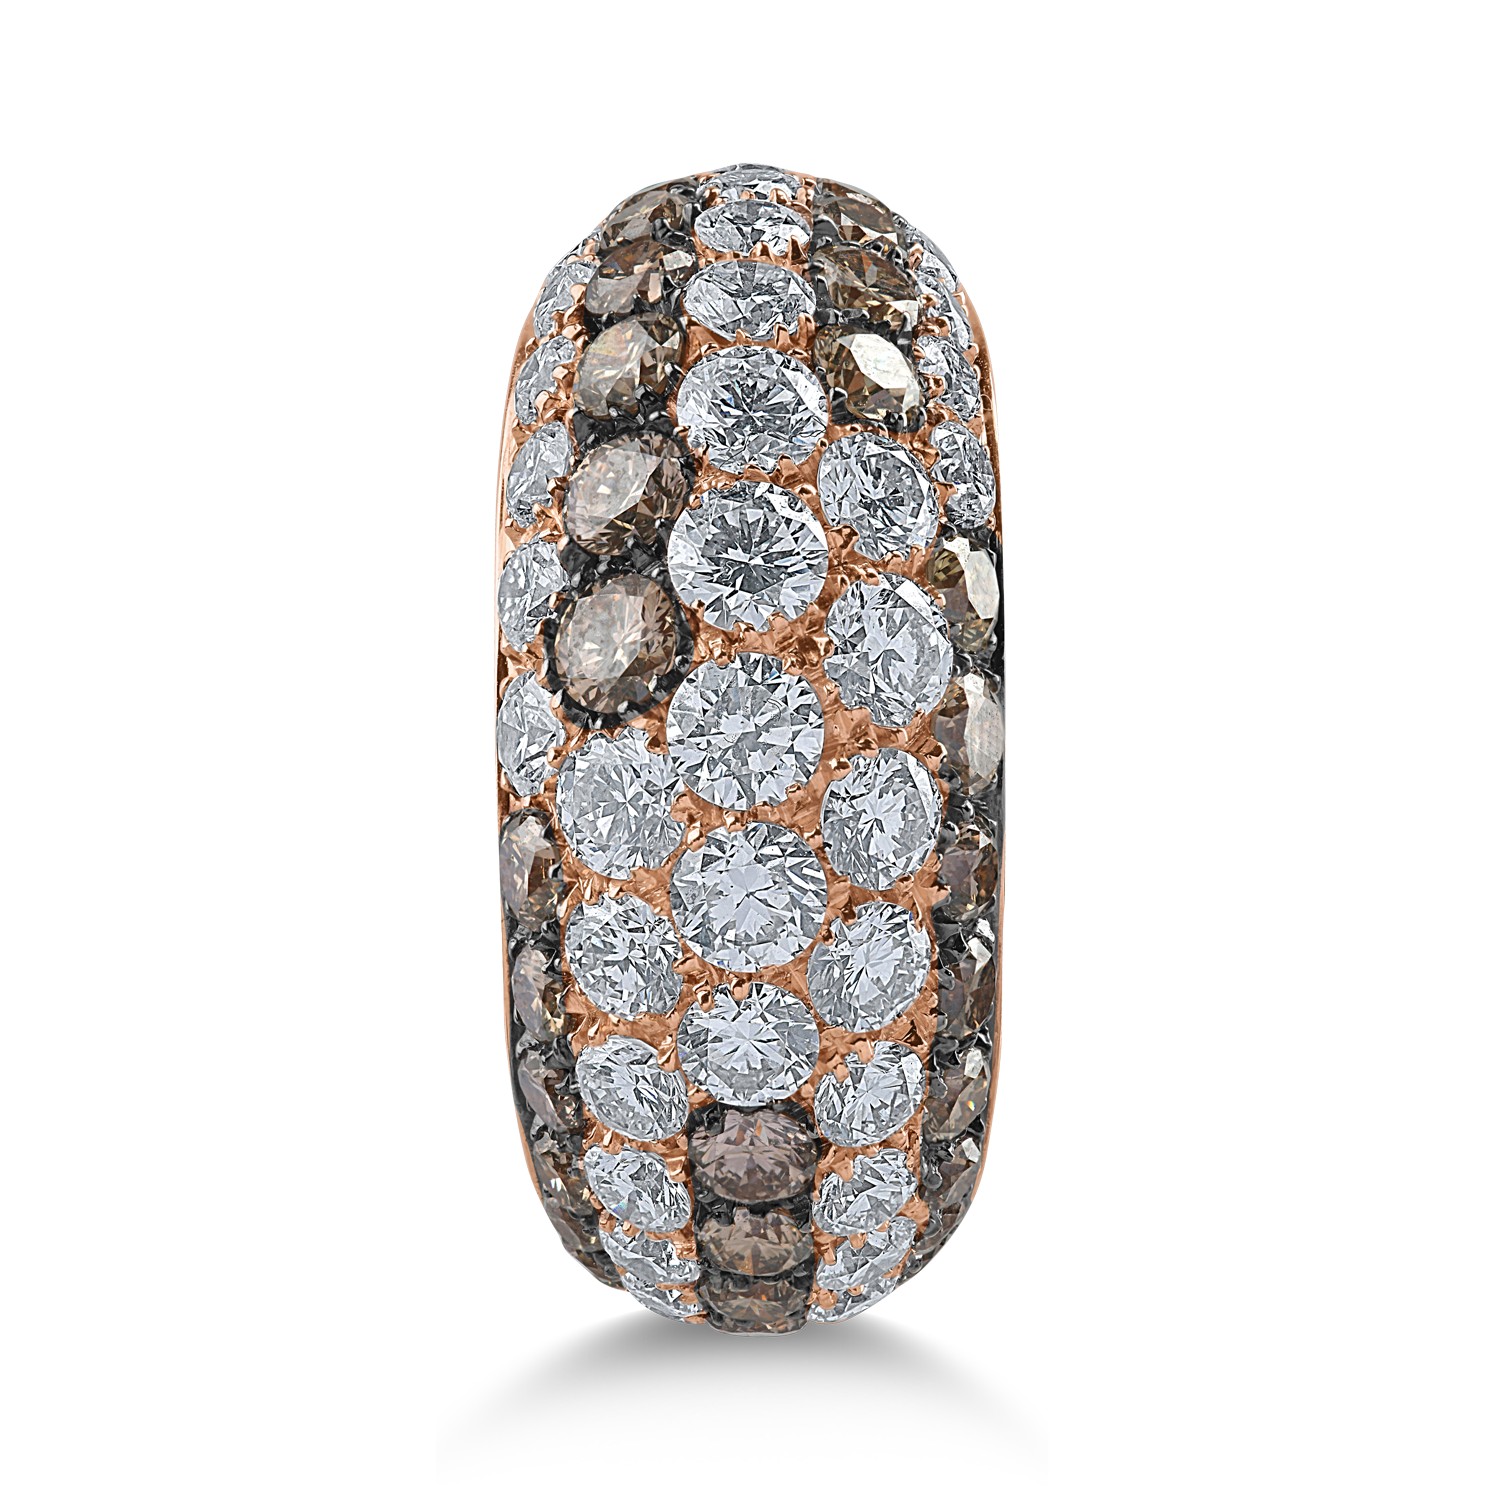 Rózsarany gyűrű 2.06ct átlátszó gyémántokkal és 1.43ct barna gyémántokkal